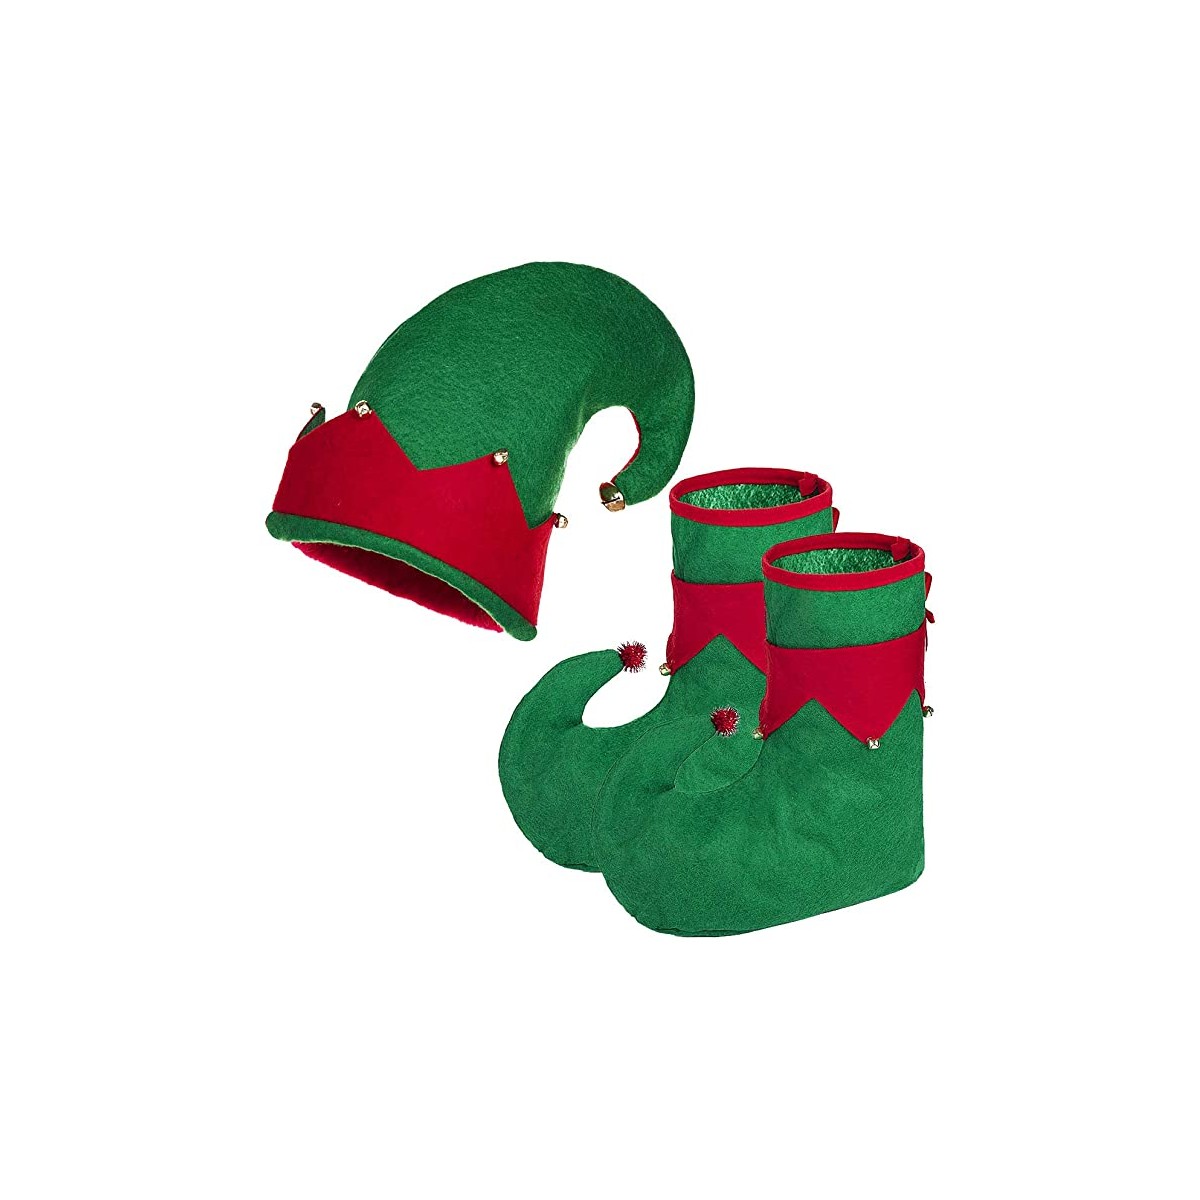 Set Scarpe e Cappello da Elfo, per costume natalizio